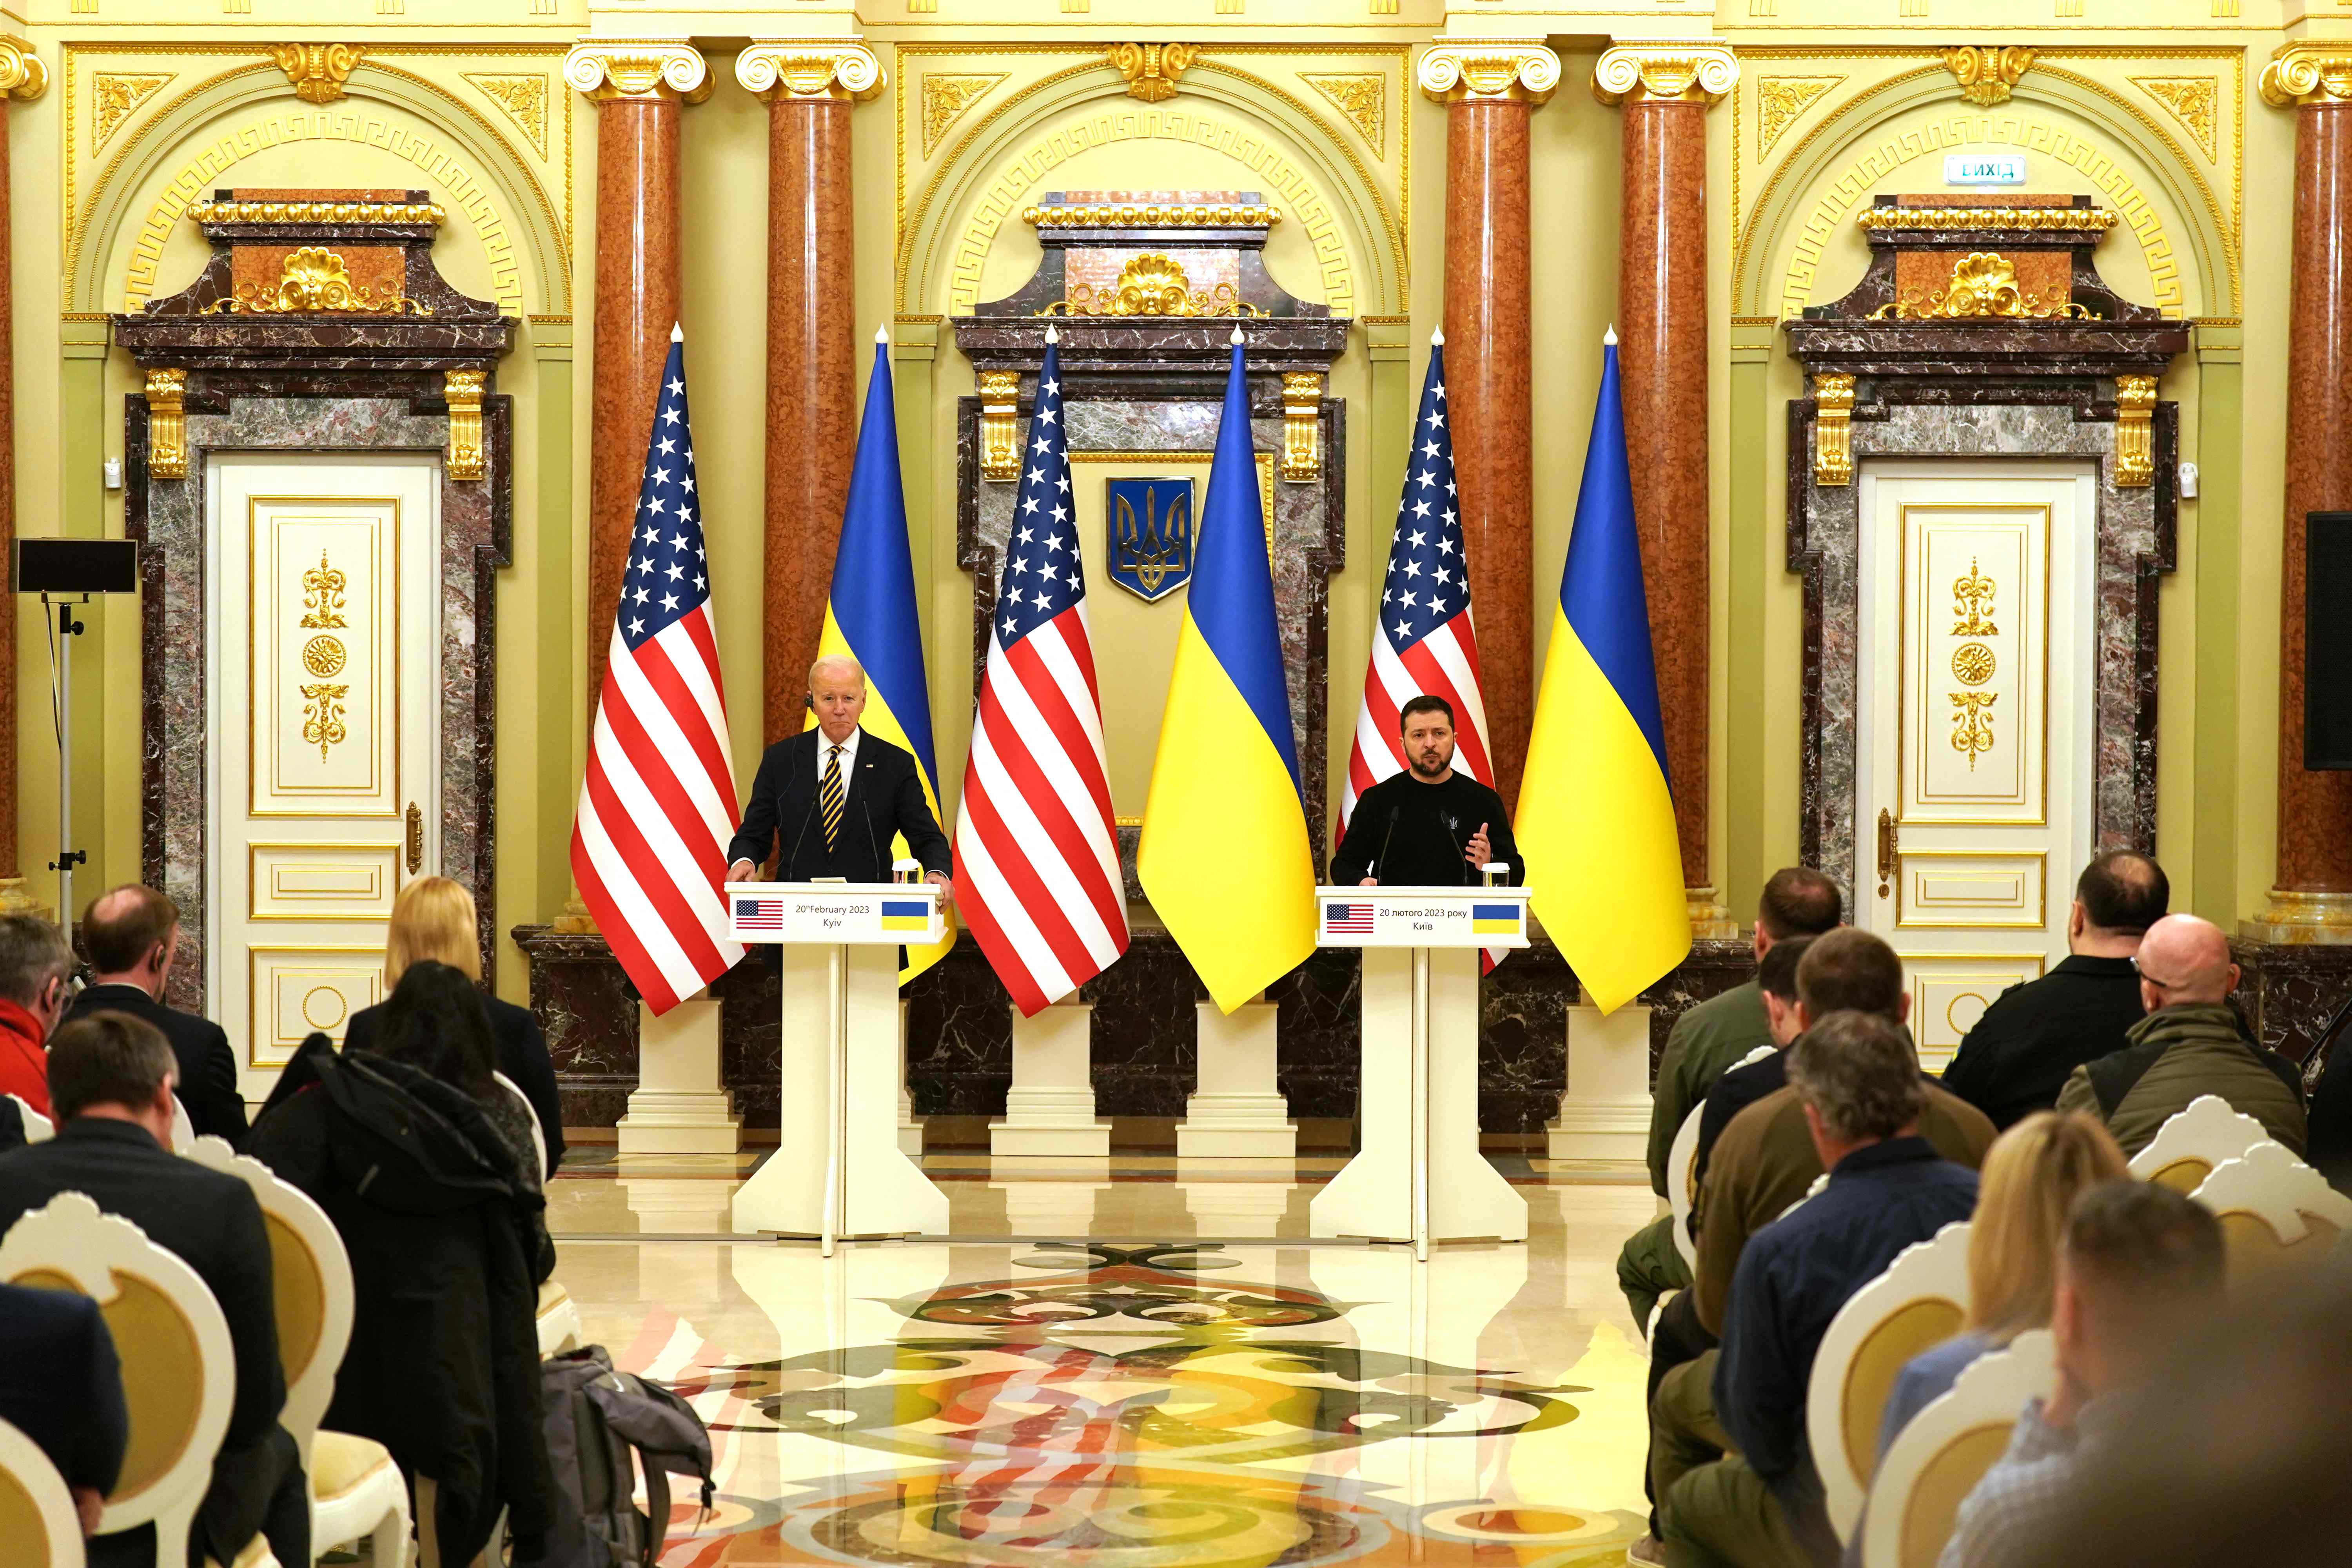 조 바이든 미국 대통령(왼쪽)이 2023년 2월 20일 예고 없이 키예프를 방문하는 볼로디미르 젤렌스키 우크라이나 대통령(오른쪽)과 공동기자회견을 하고 있다. 2023년 2월 20일, 그는 또한 우크라이나의 영토 보전을 방어하기 위한 워싱턴의 “지칠 줄 모르는 약속”을 맹세했습니다. (사진 제공: Dimitar DILKOFF / AFP)